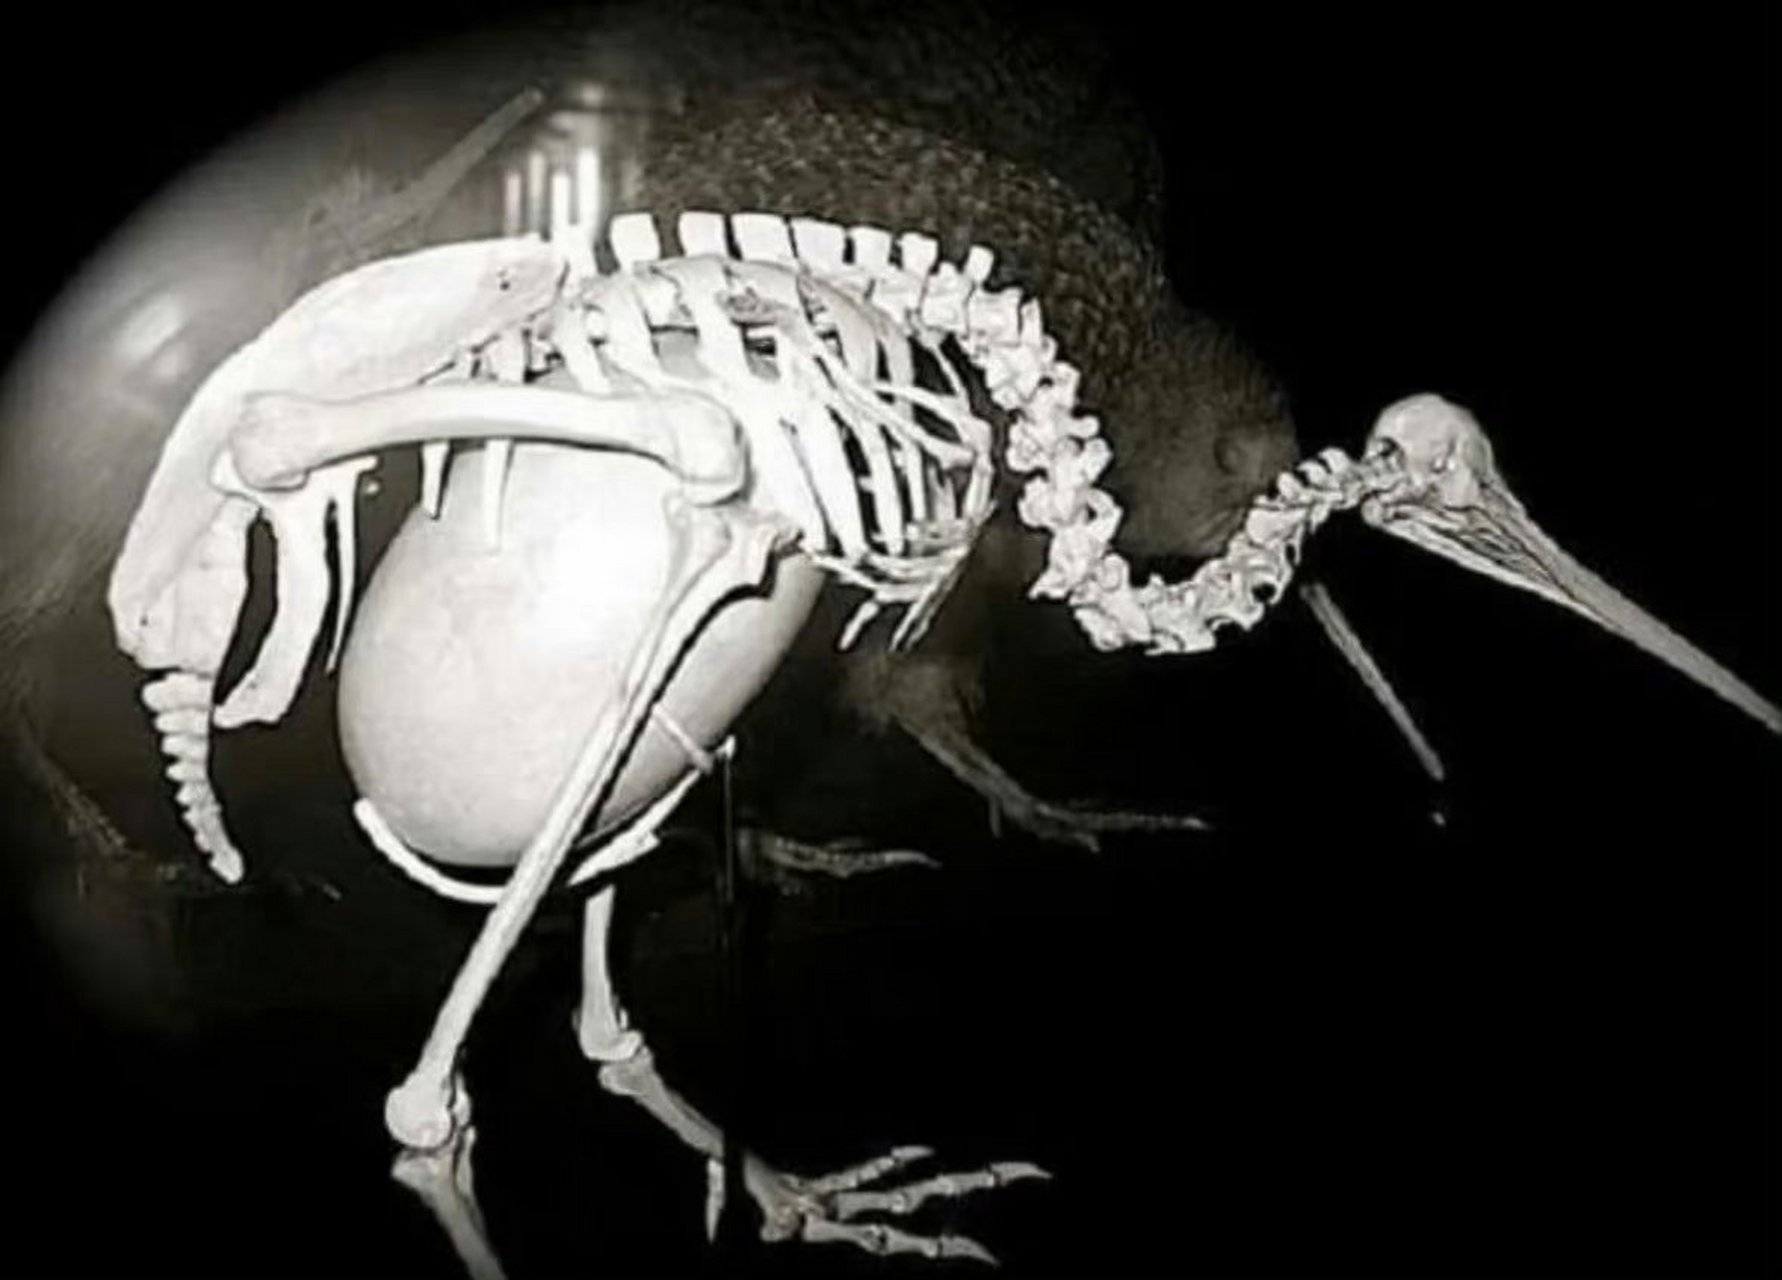 kiwi鸟蛋图片